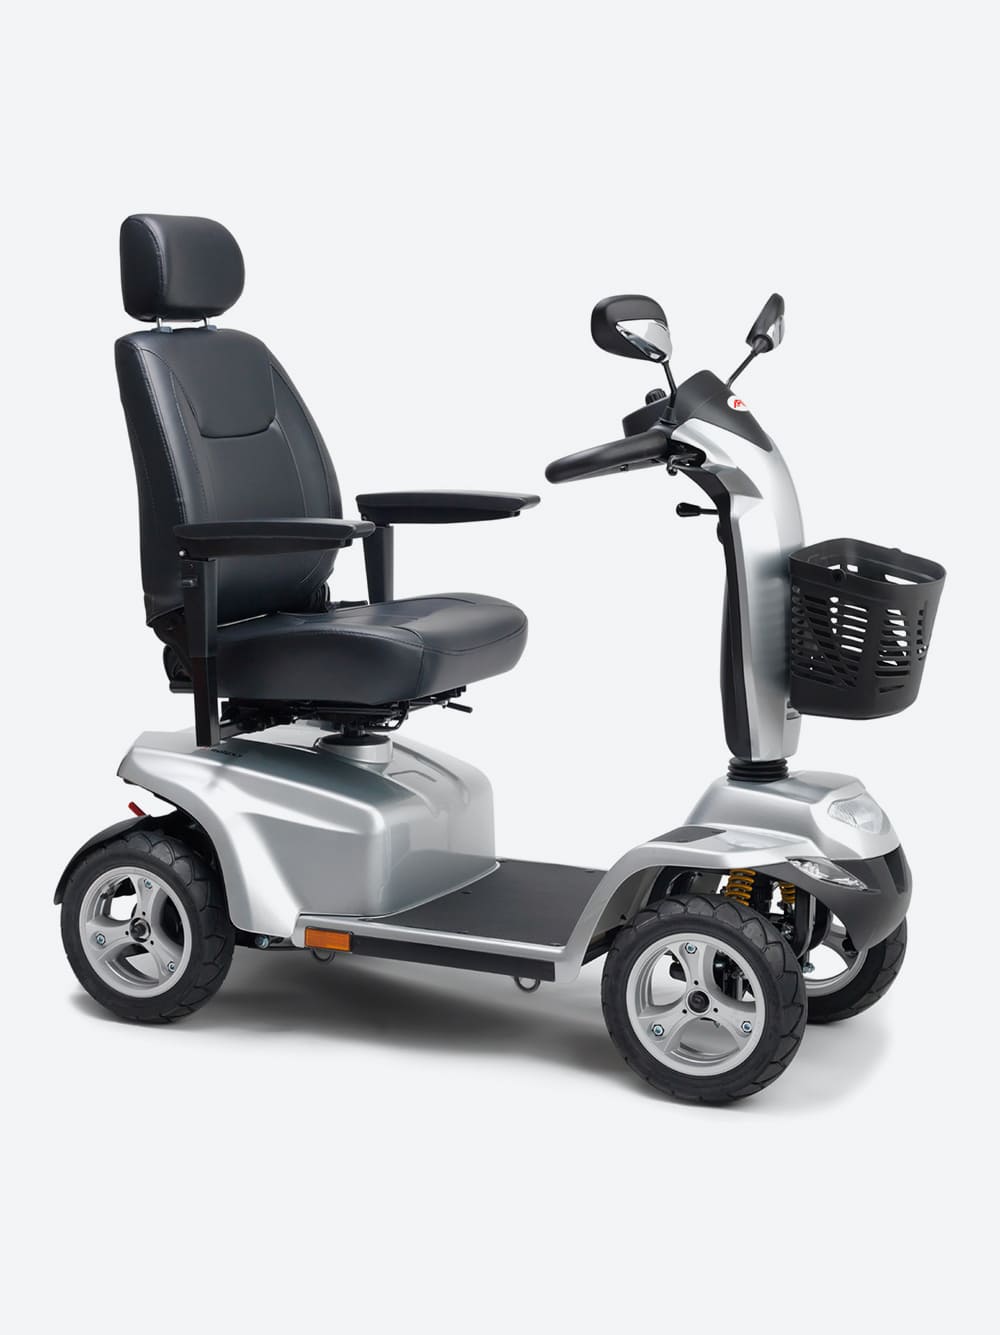 Scooter eléctrico para discapacitados o personas con movilidad reducida.